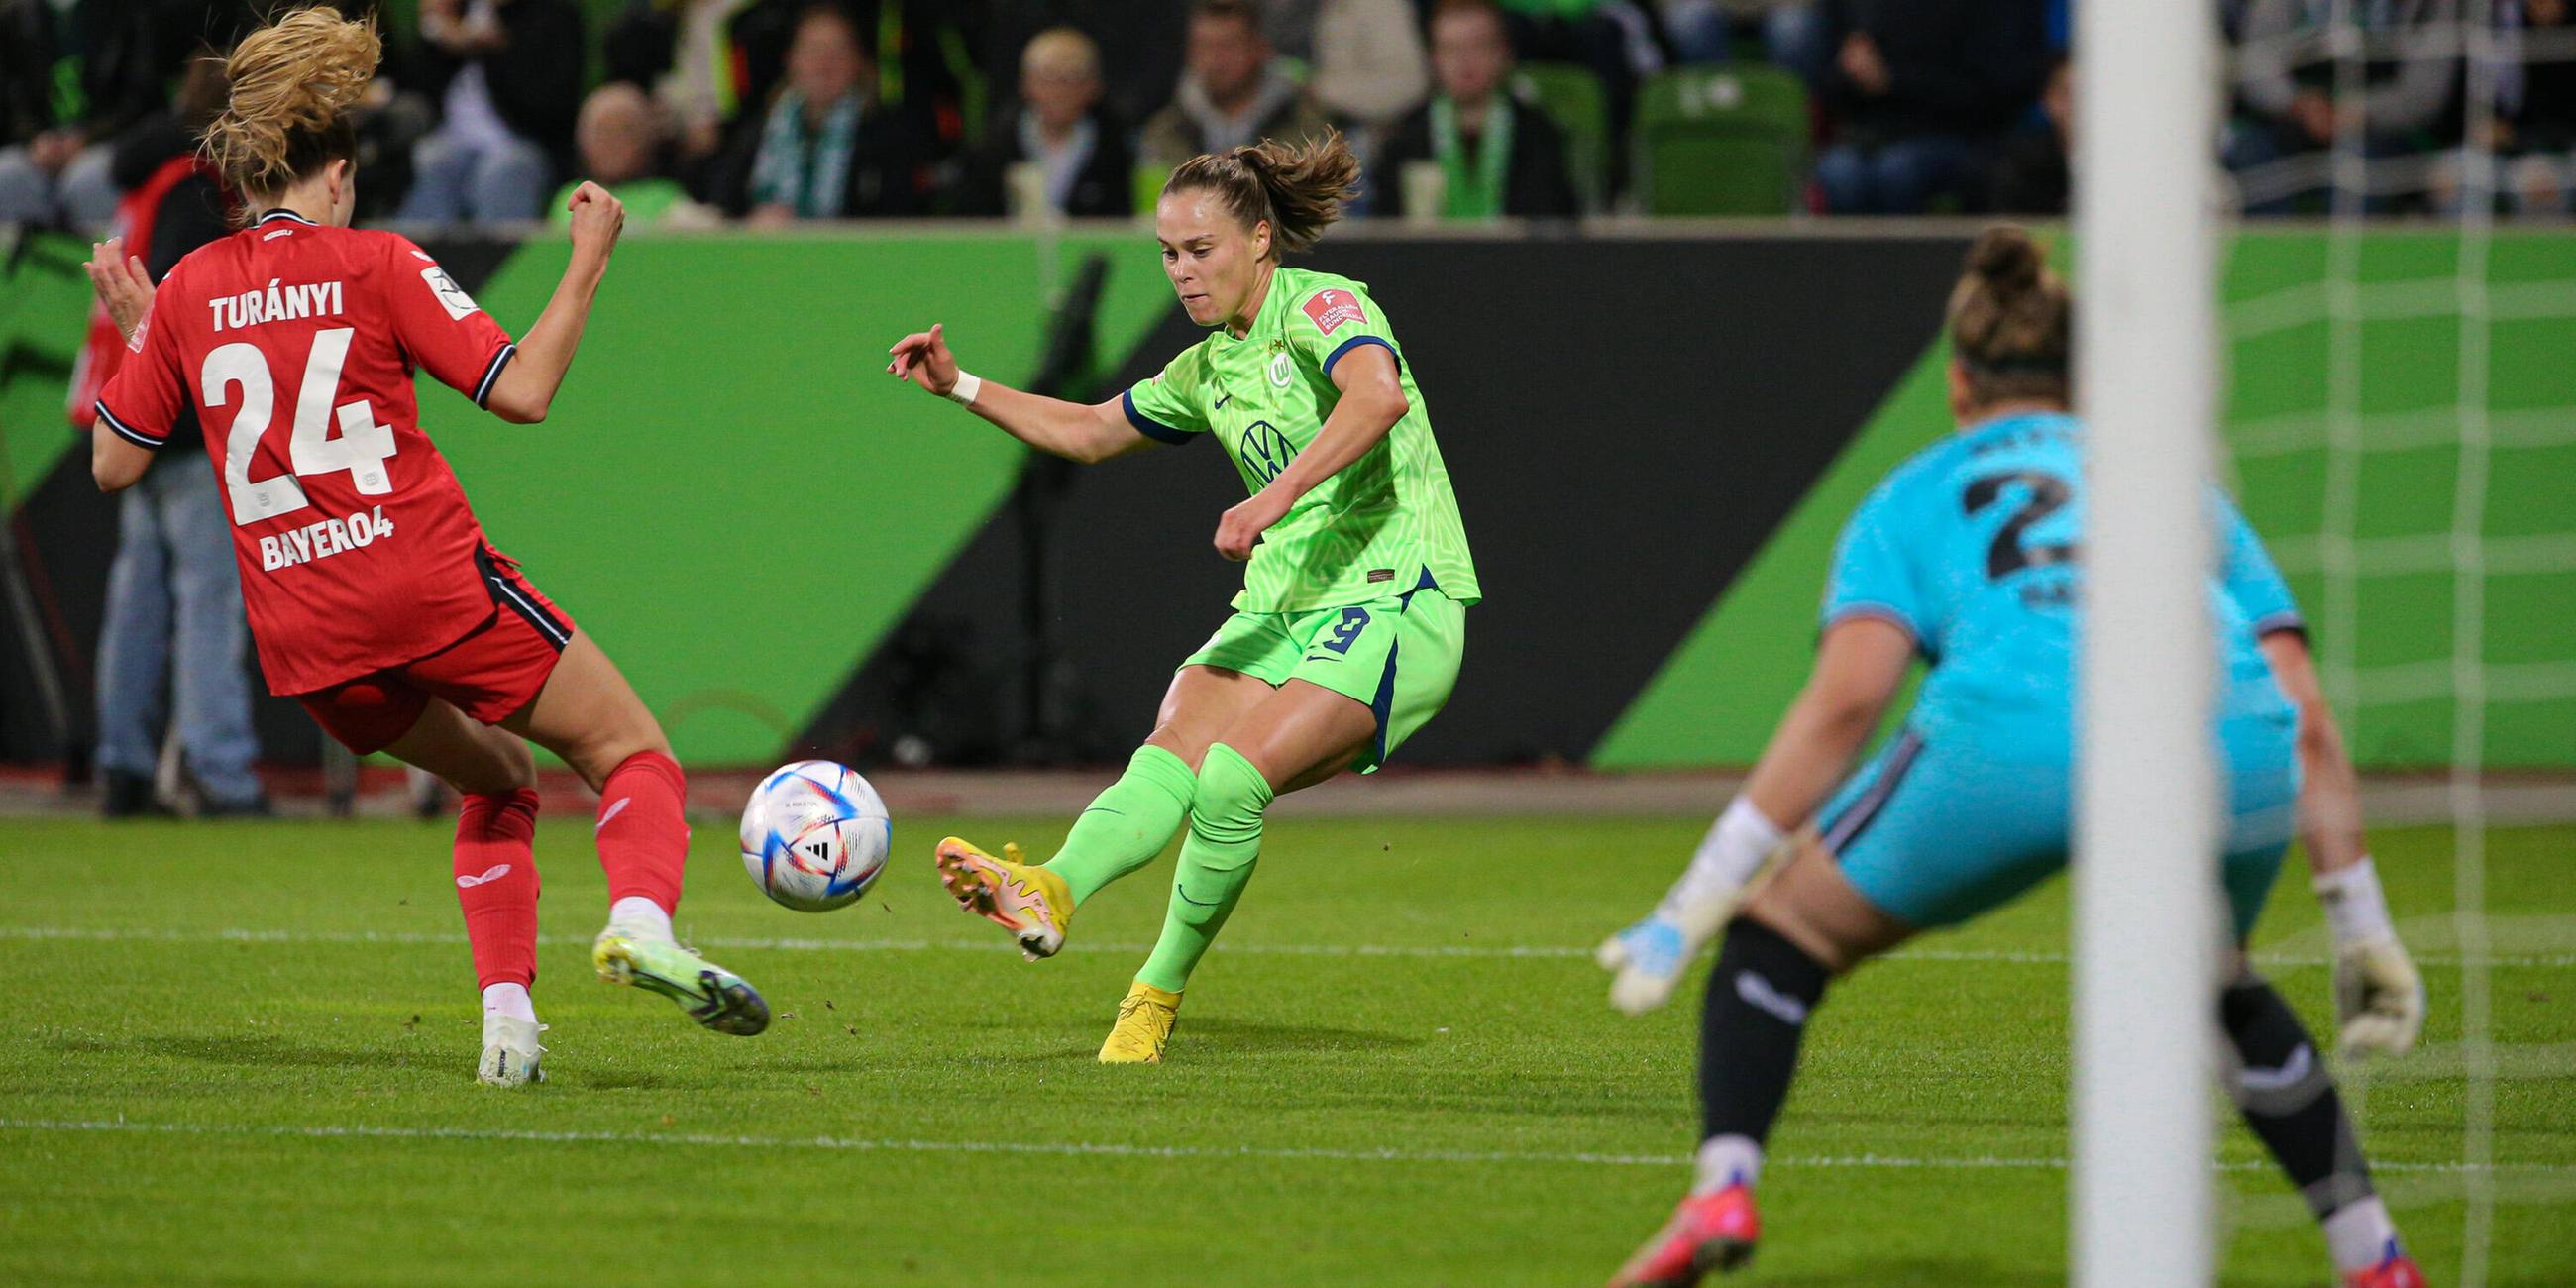 Spielszene: Lilla Turanyi (Bayer 04 Leverkusen, 24) und Ewa Pajor (VfL Wolfsburg, 9) im Zweikampf, 